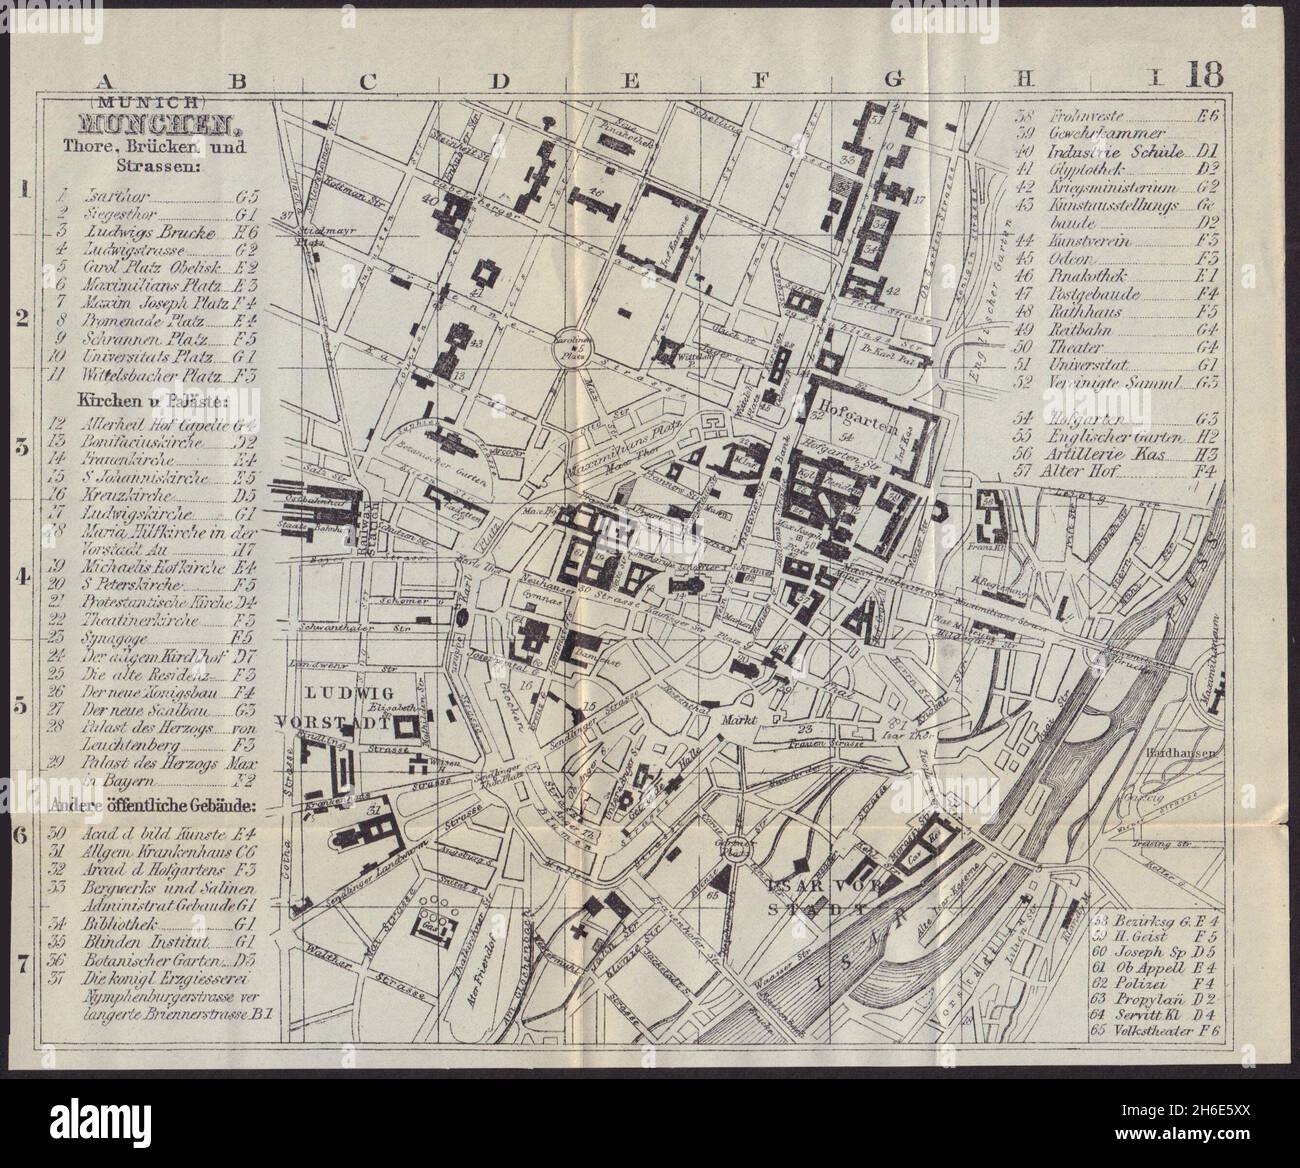 MONACO DI BAVIERA München MUNCHEN antica città pianta mappa della città.  Germania. BRADSHAW 1892 Foto stock - Alamy